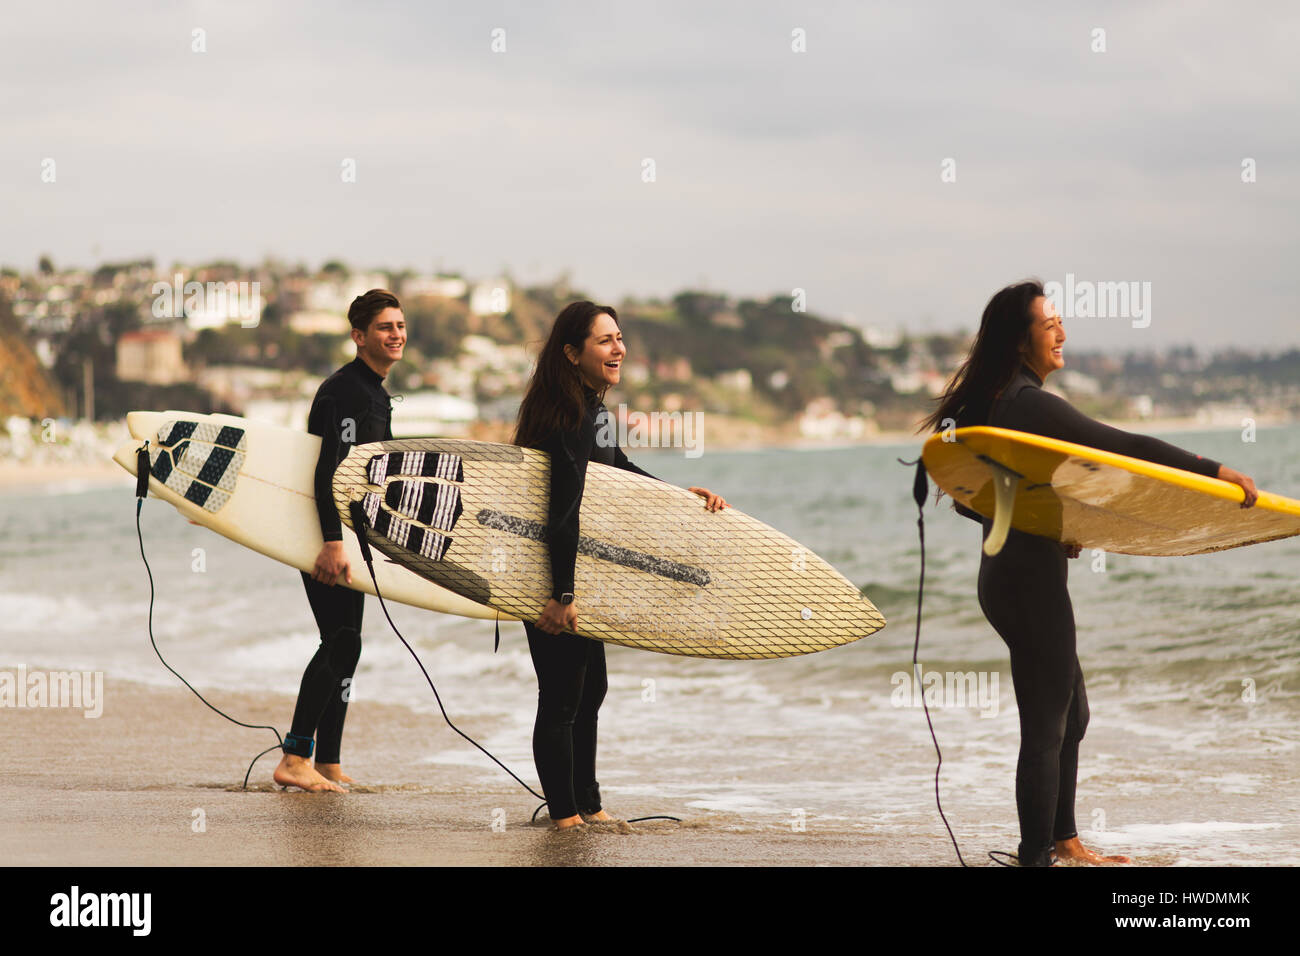 Trois amis debout dans la mer, holding surfboards, préparation pour le surf Banque D'Images